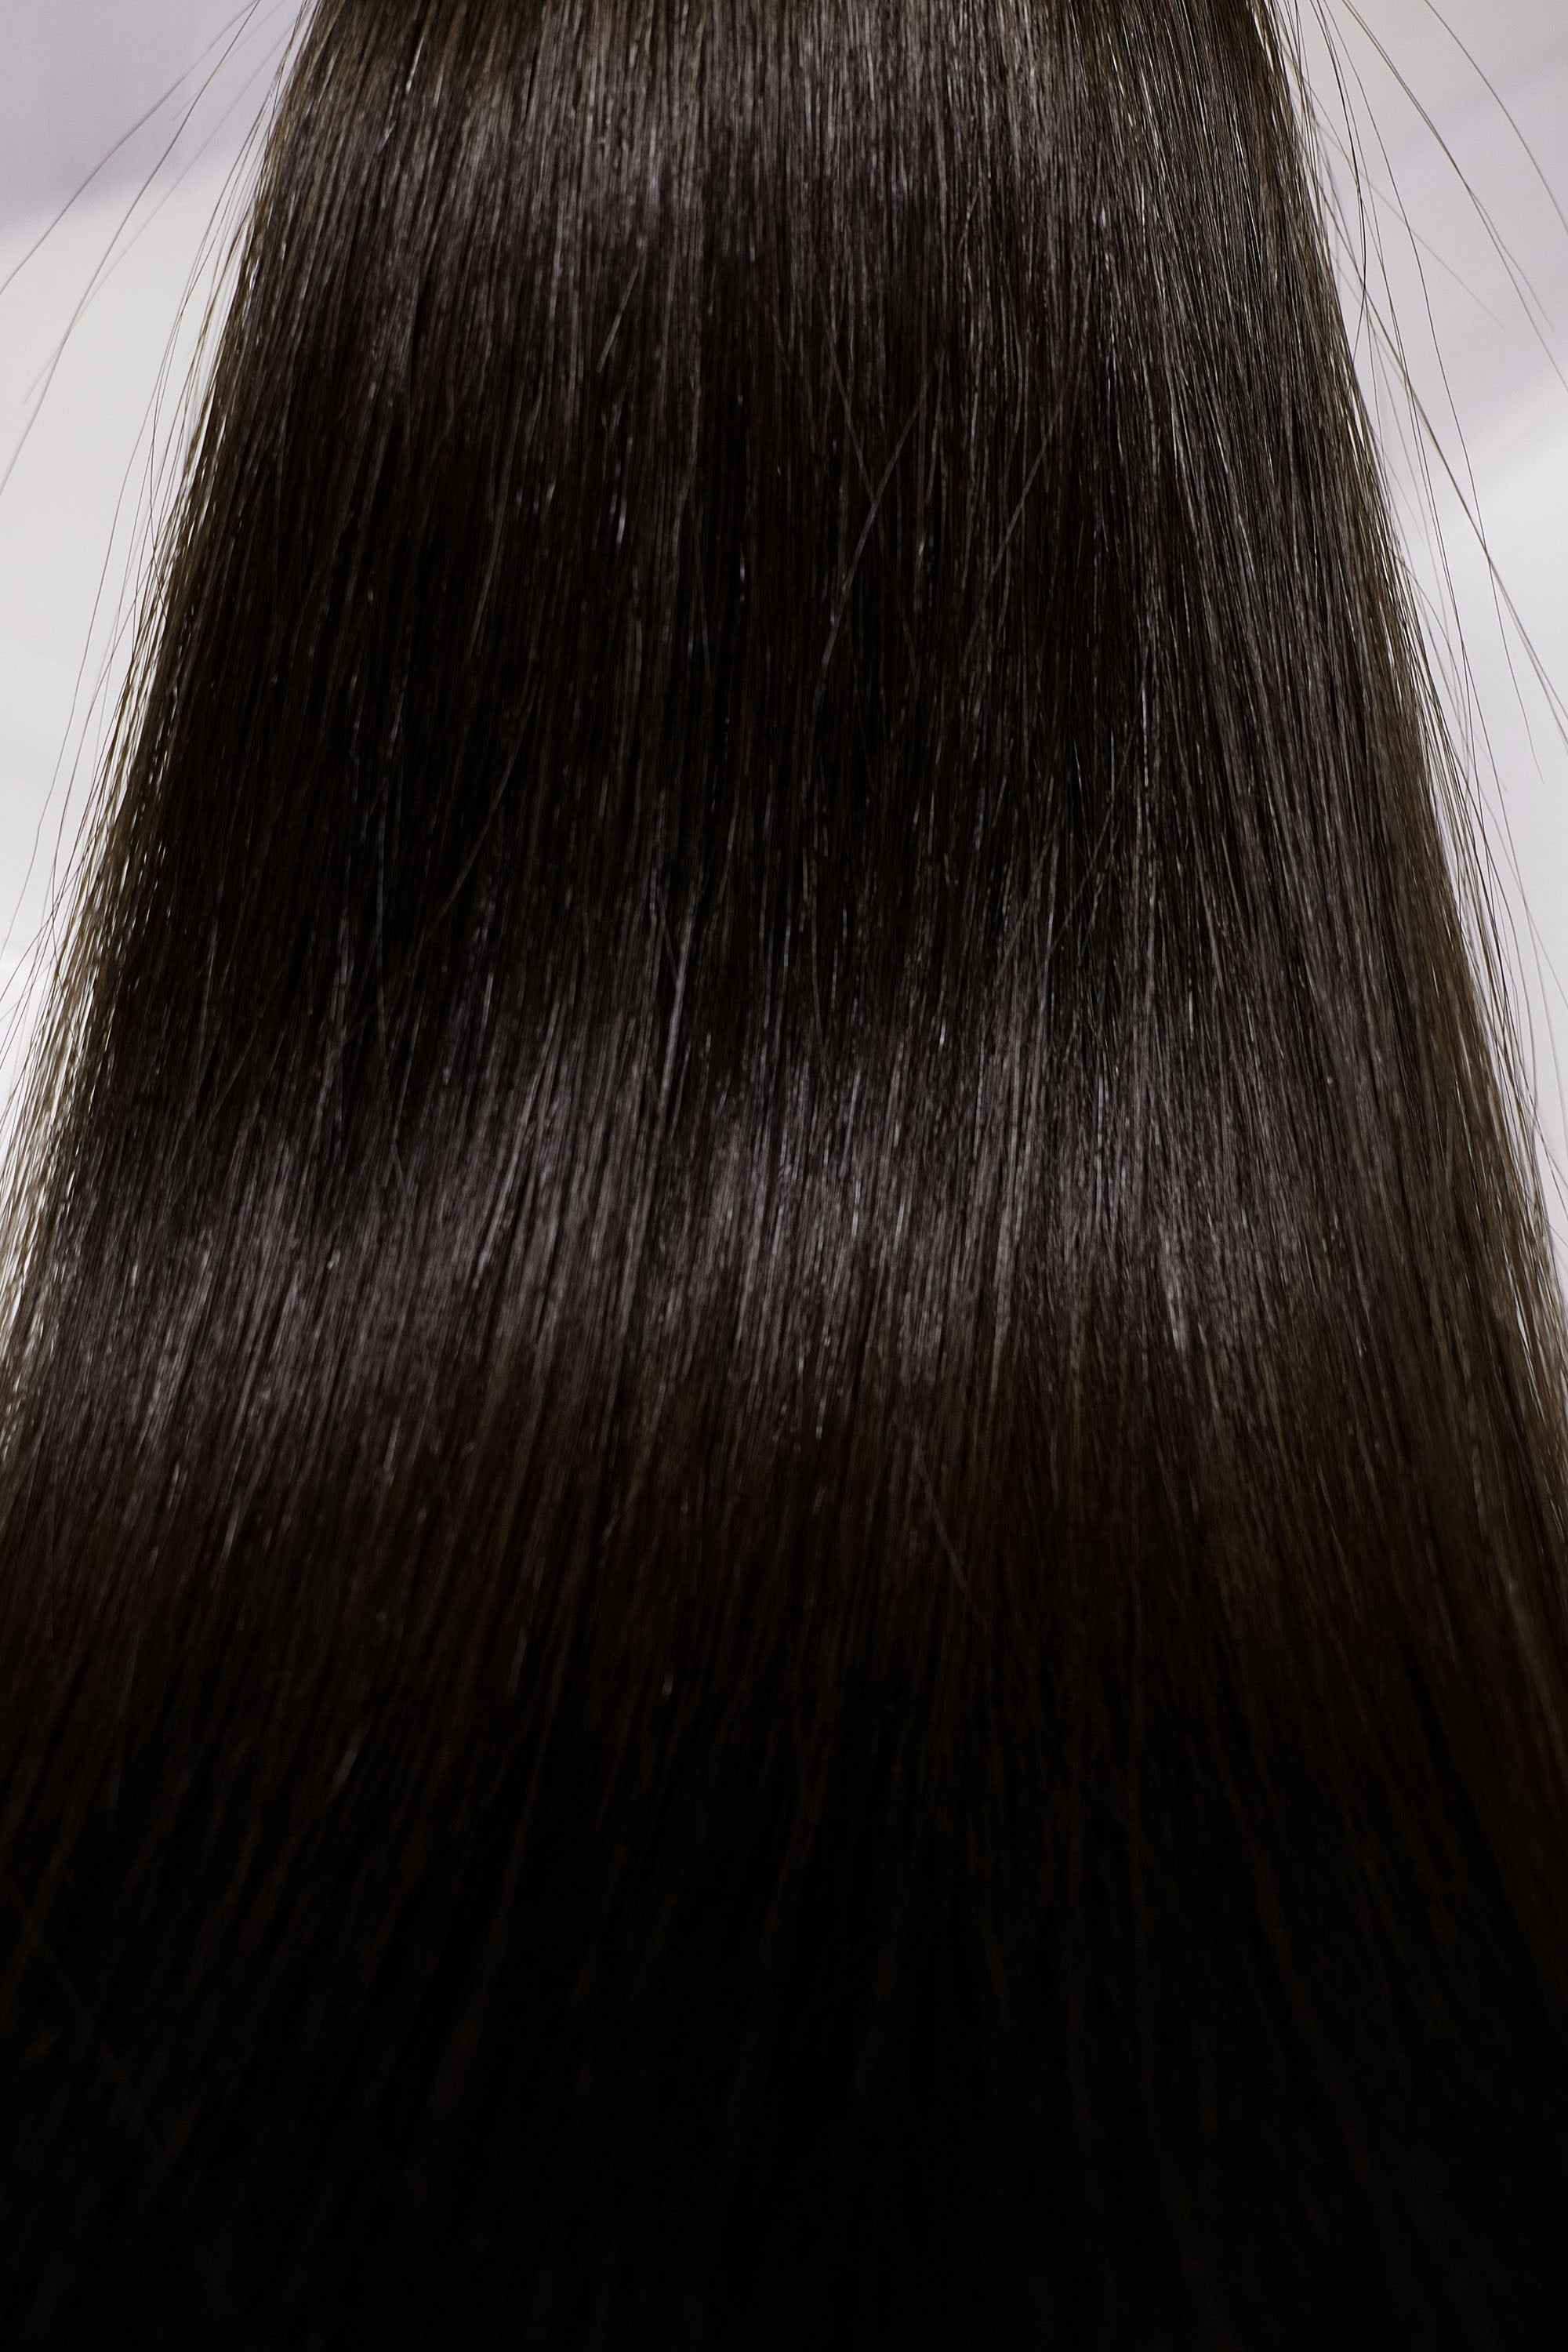 Behair professional Bulk hair "Premium" 20" (50cm) Natural Straight Natural Black #1B - 25g hair extensions